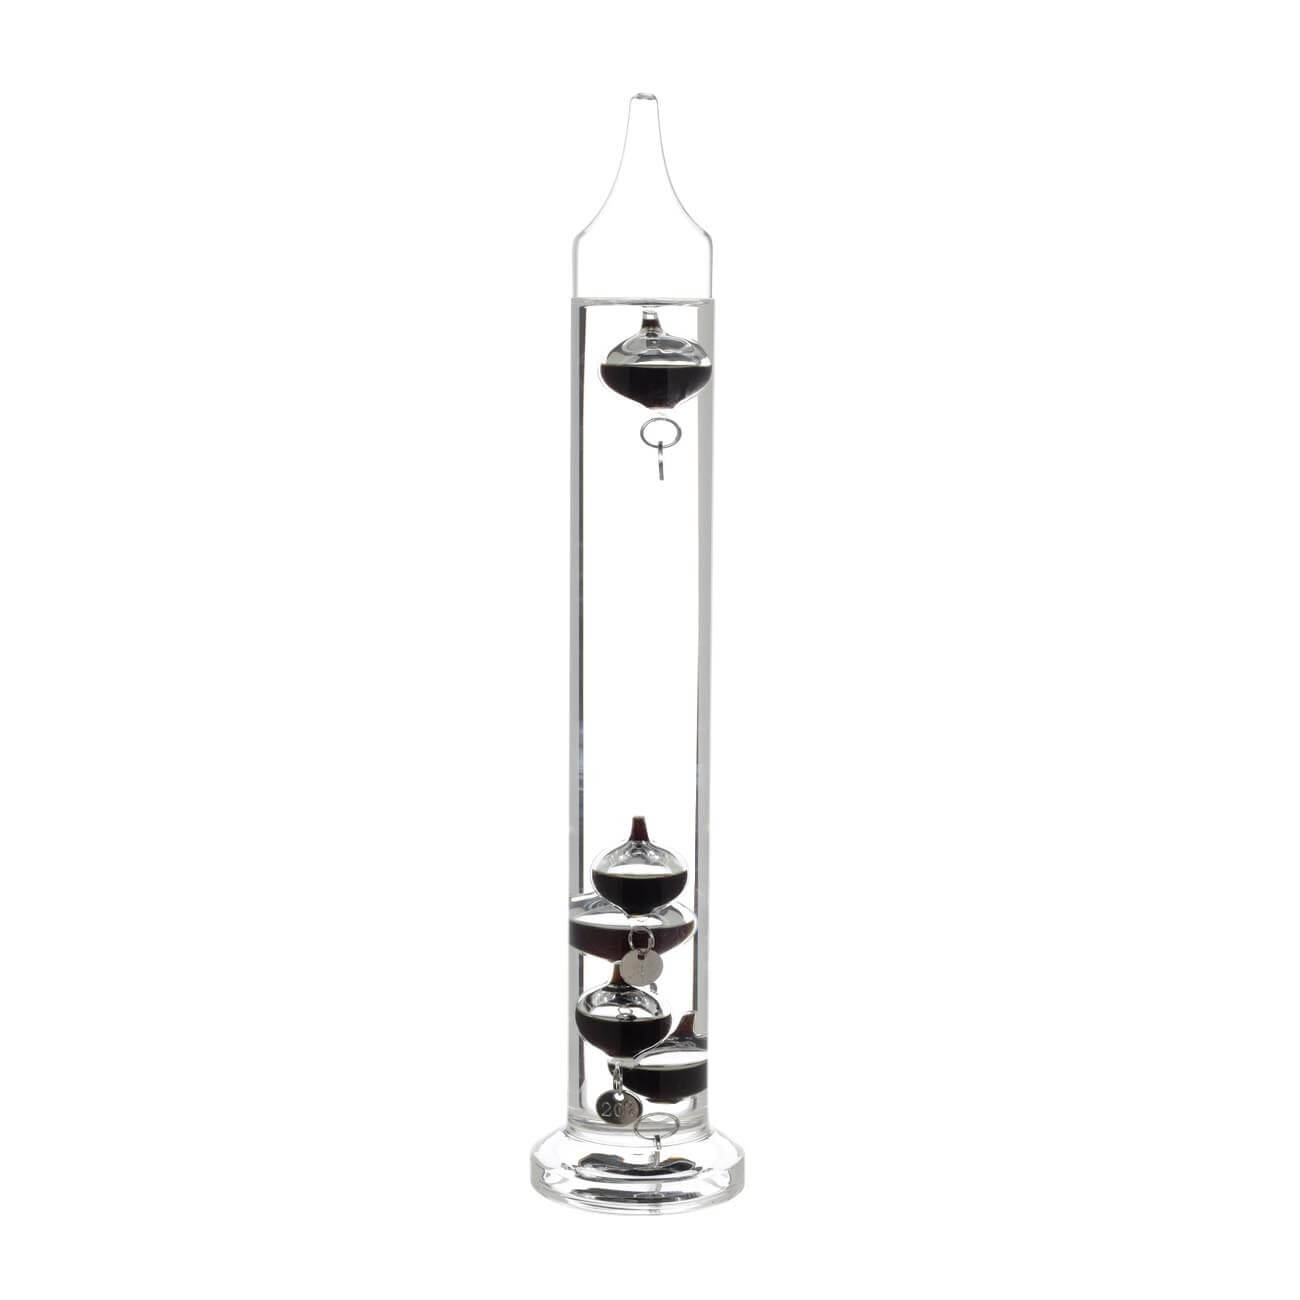 Термометр Галилея, 28 см, 5 сосудов-буйков, стекло, Discovery набор для вина 5 предметов штопор нож для срезания фольги пробка каплеуловитель термометр